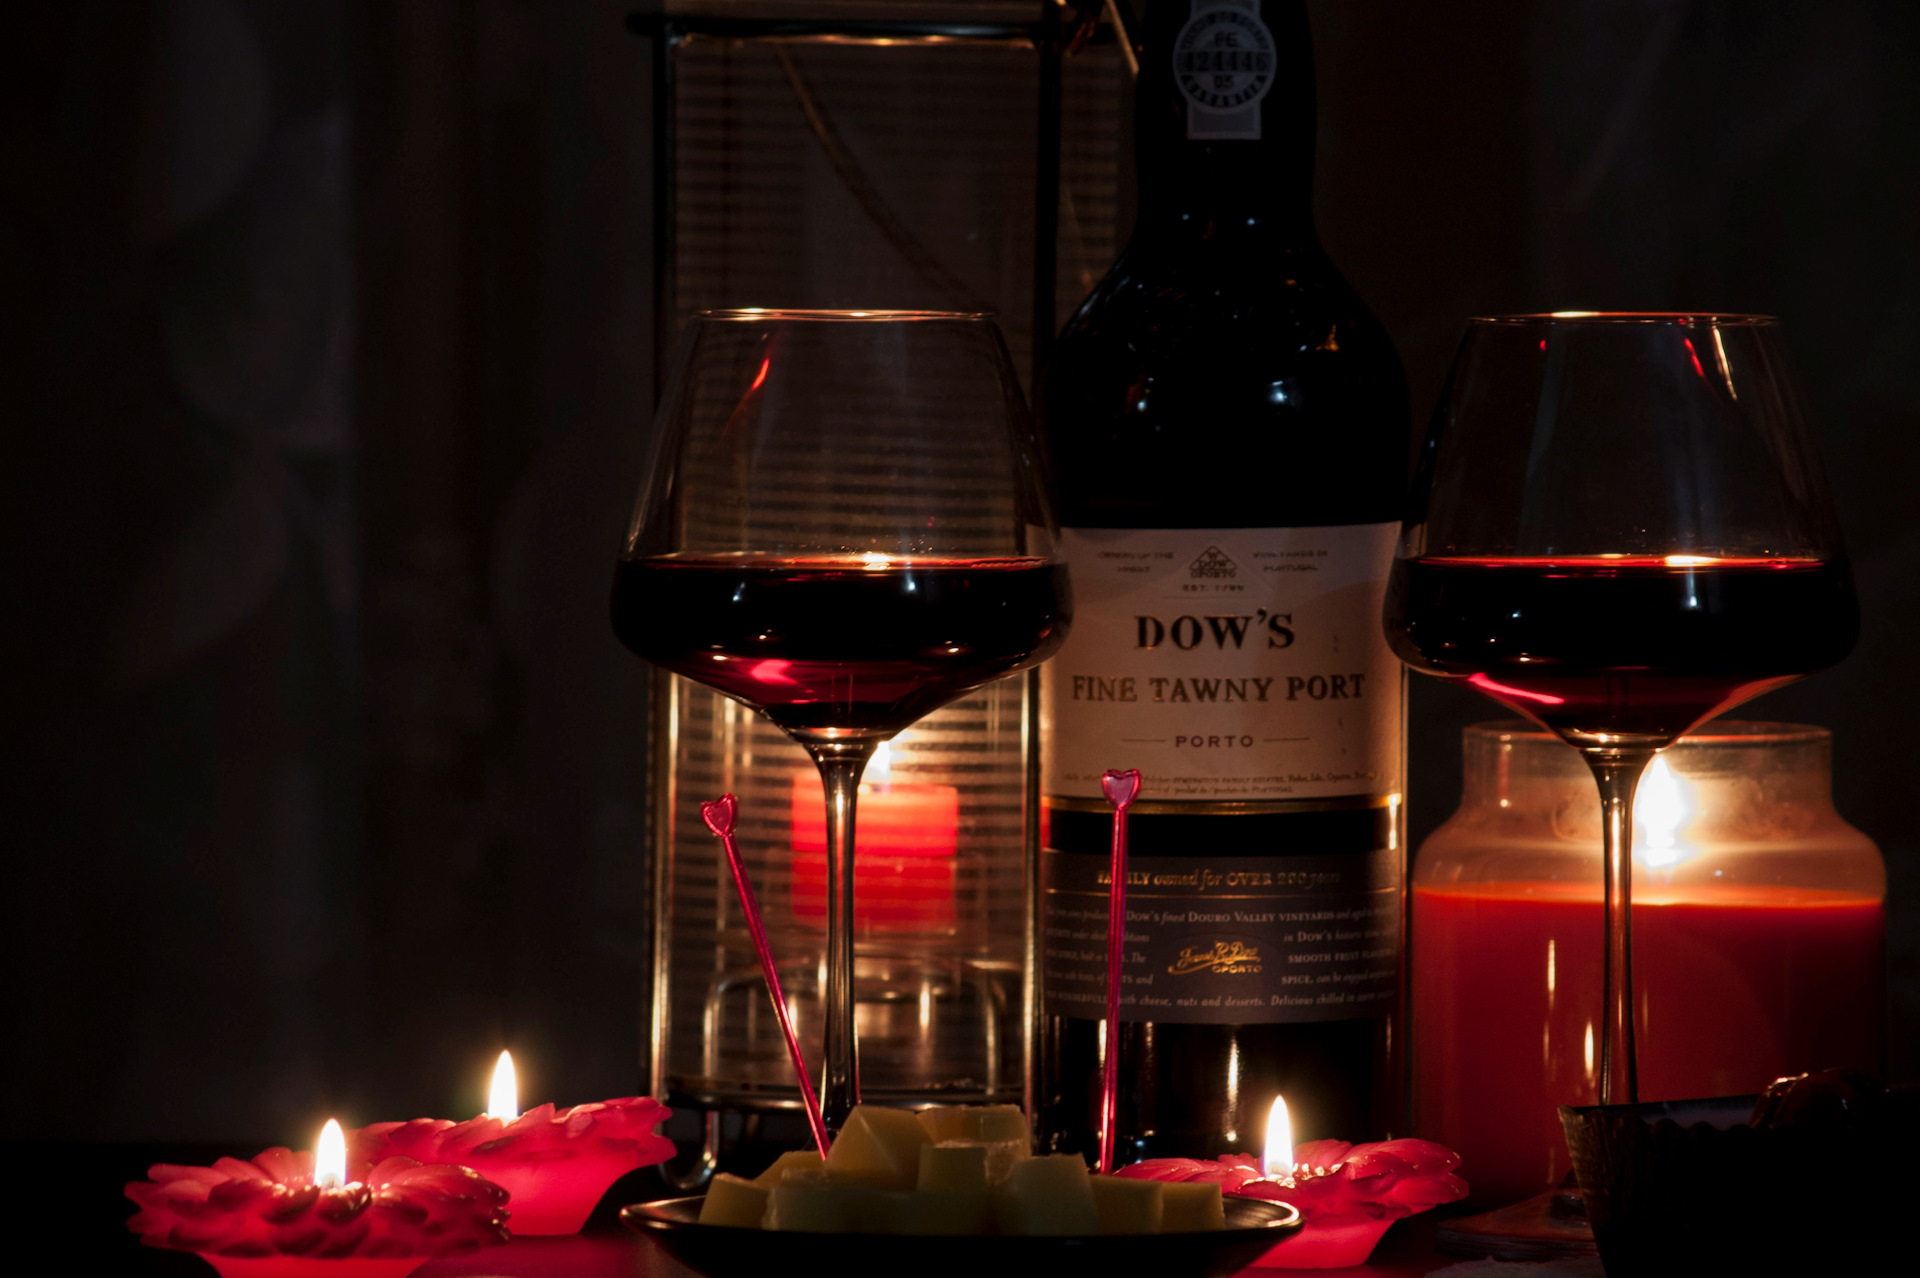 Поставь вечер 5. Романтический вечер. Романтический ужин с вином. Романтический ужин вино свечи. Романтический вечер с вином и свечами.